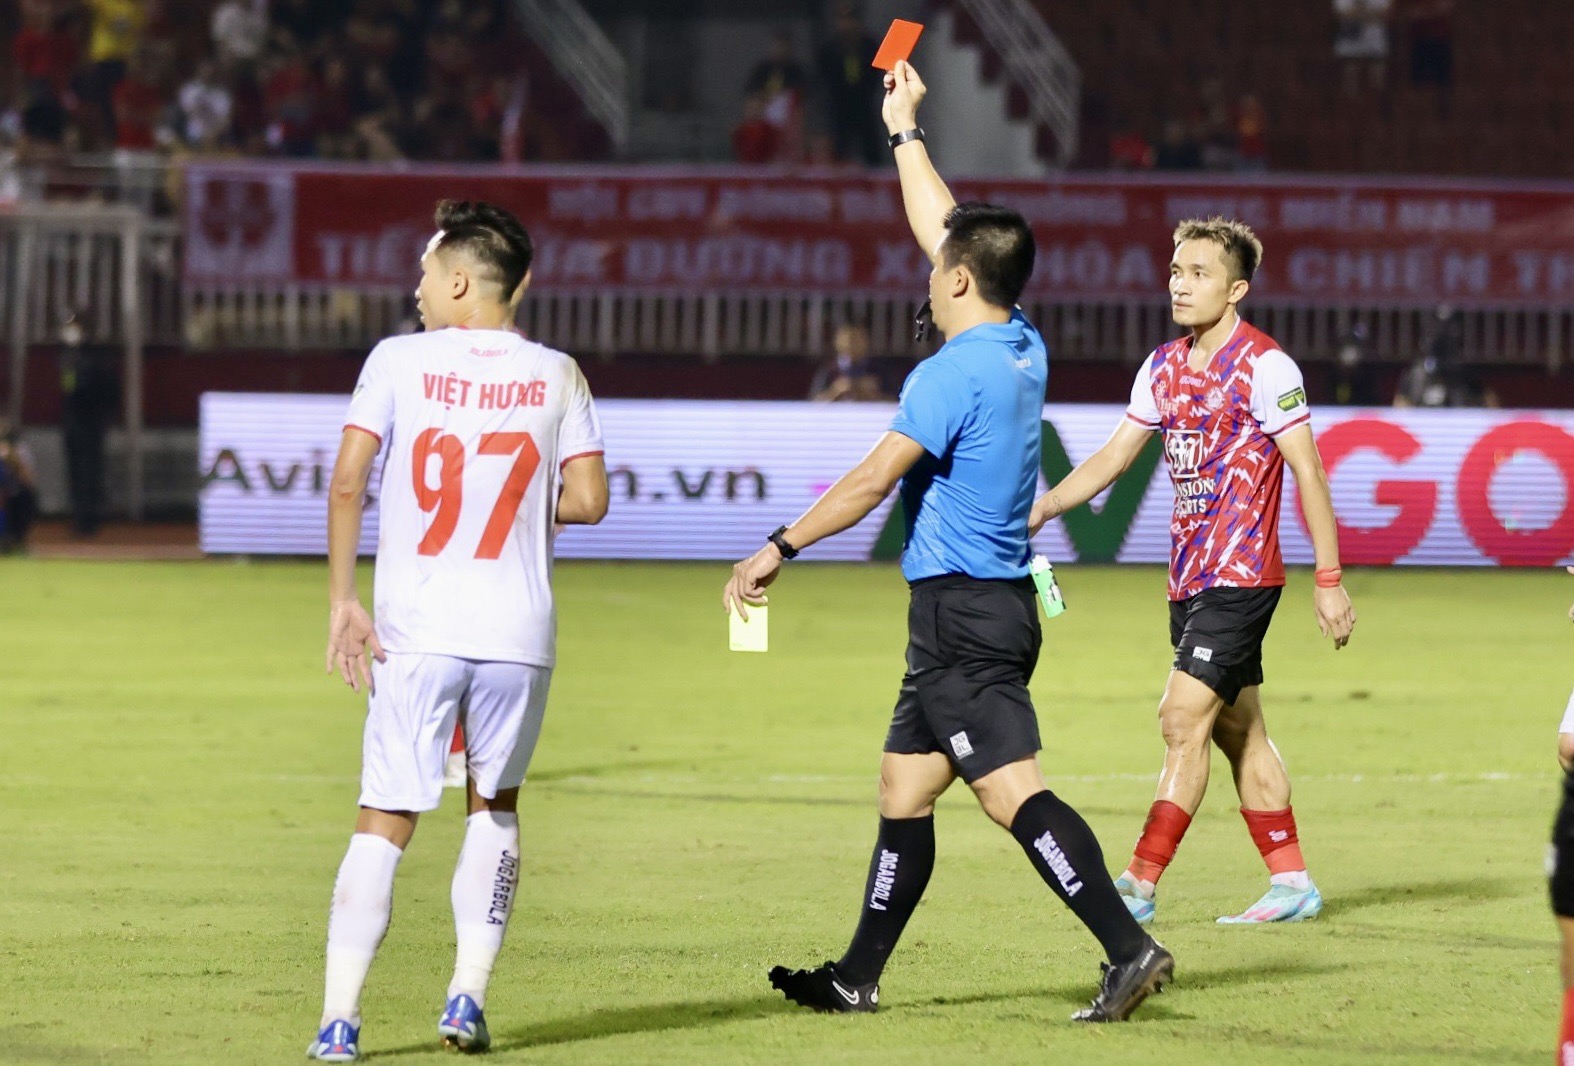 Đội trưởng CLB TP.HCM nhận thẻ đỏ, HLV Phùng Thanh Phương: 'Quá nặng tay' - Ảnh 2.